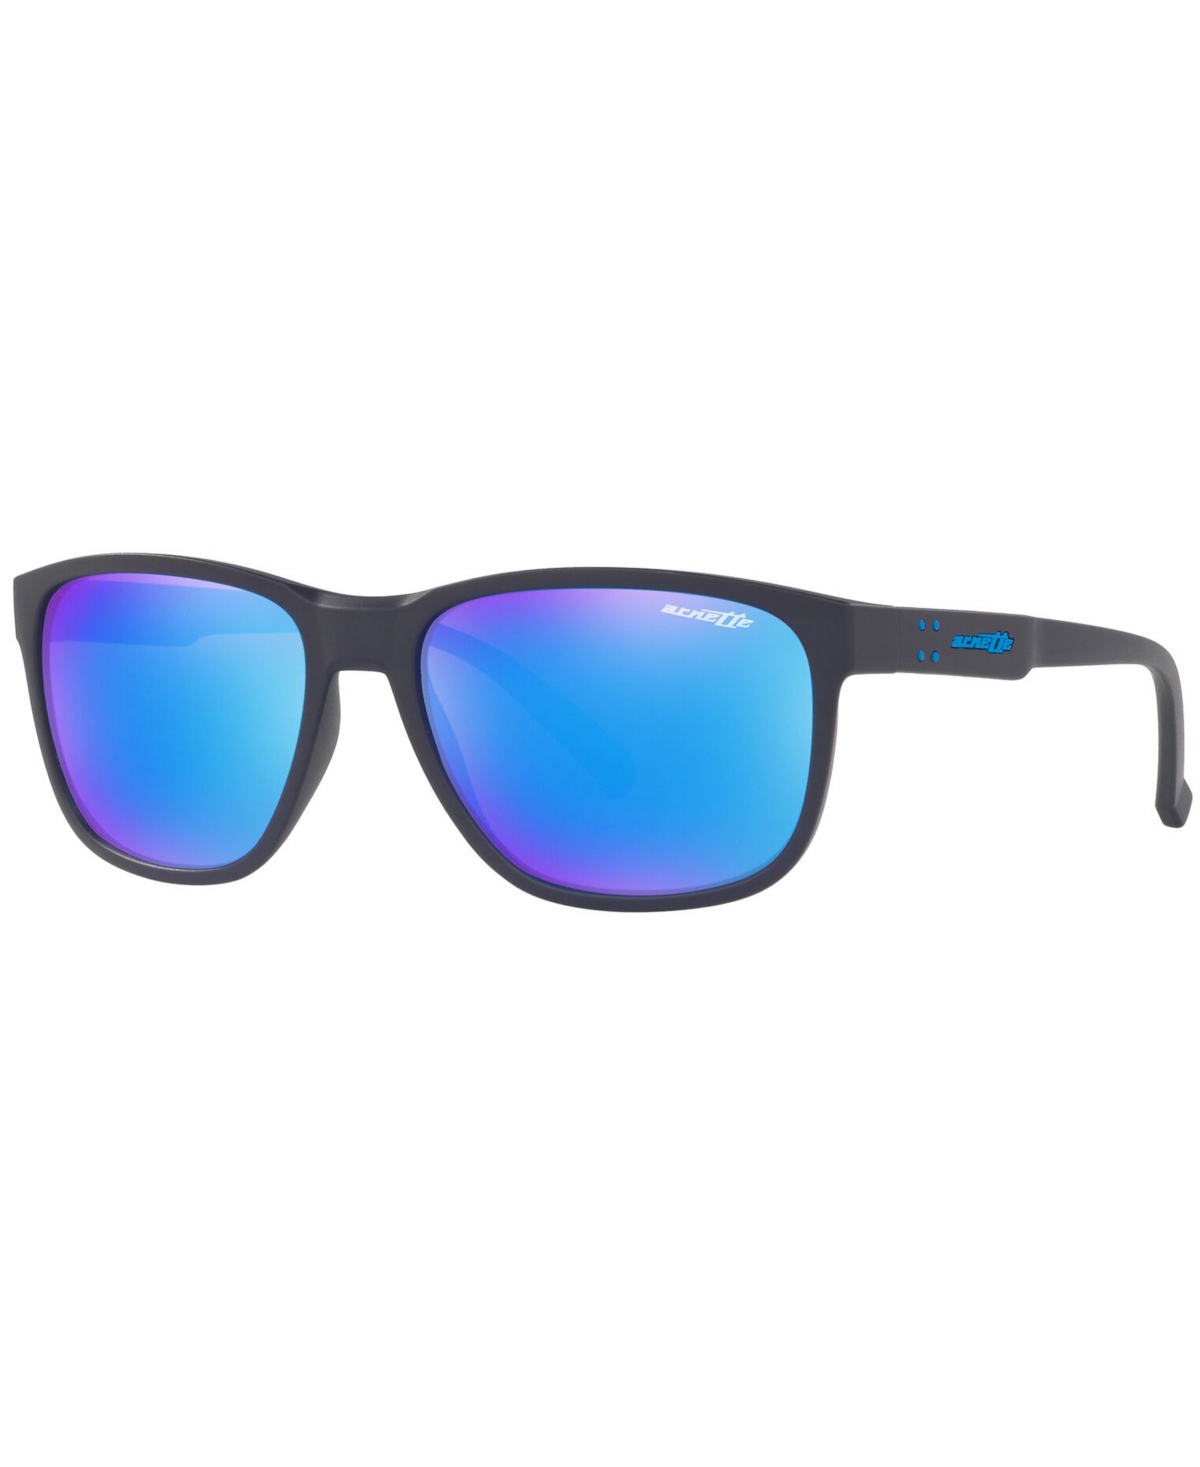 Sunglasses, AN4257 57 Urca - DARK BLUE/GREEN MIRROR LIGHT BLUE